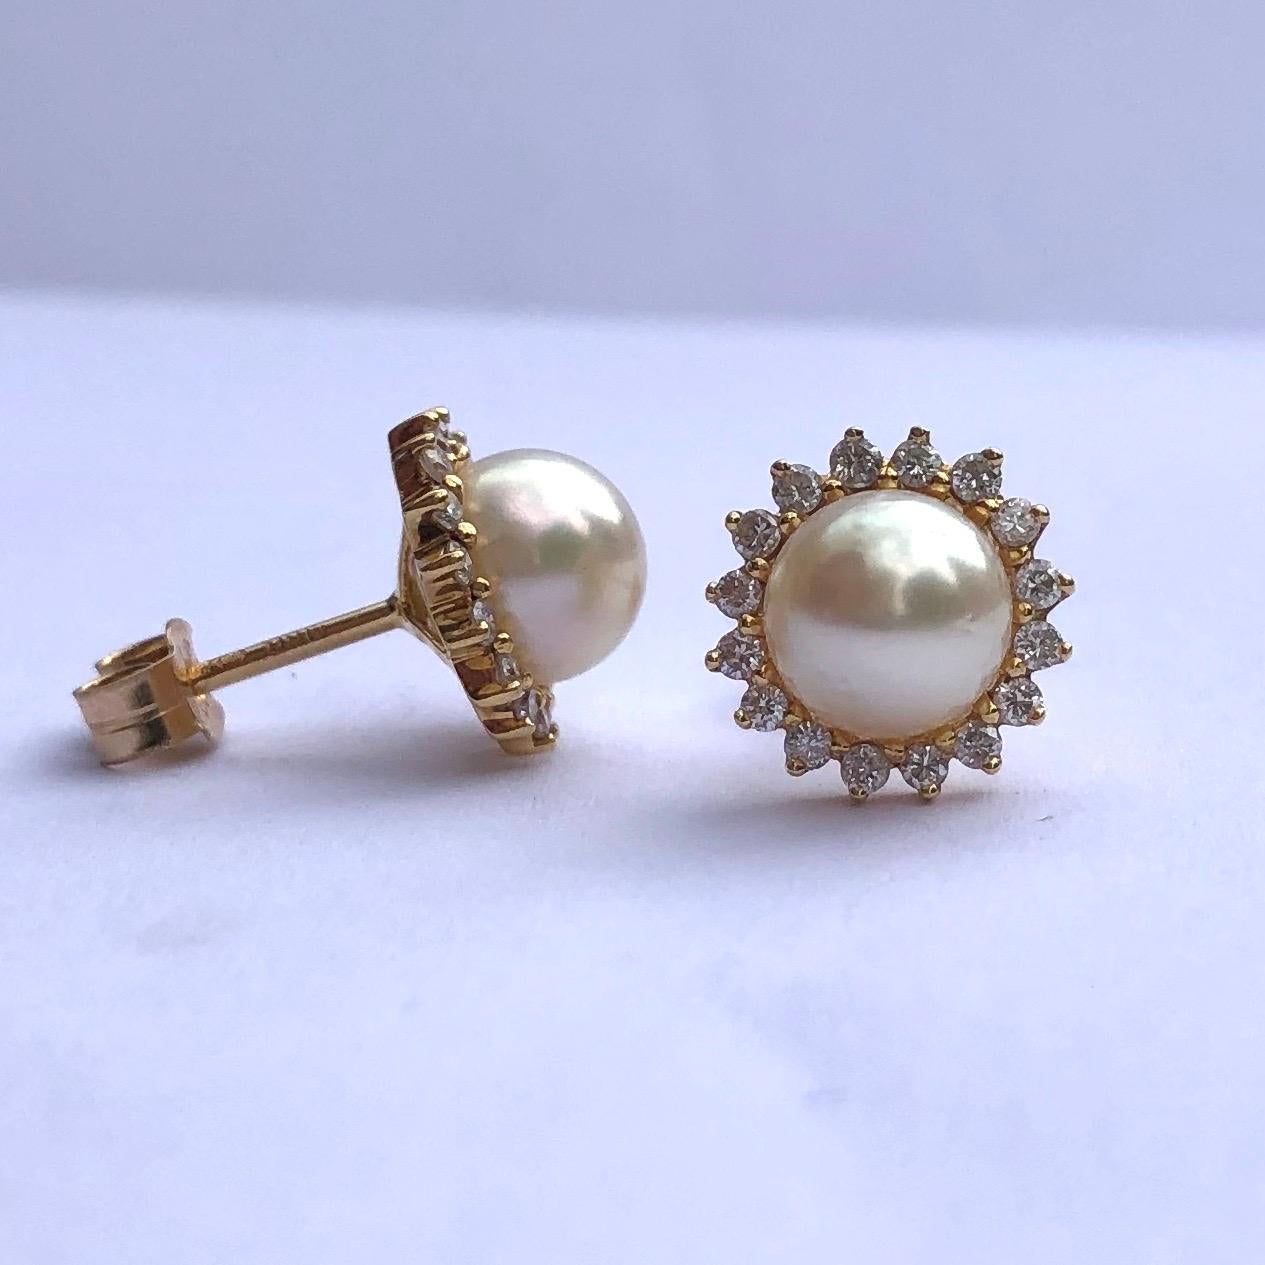 Dieses Paar klassischer und wunderschöner Perlencluster-Ohrringe enthält insgesamt 60 Diamanten. Die Perlen sind hell und glänzend und die Diamanten sorgen für das perfekte Funkeln. 

Cluster-Durchmesser: 11mm 

Gewicht: 3,2 g